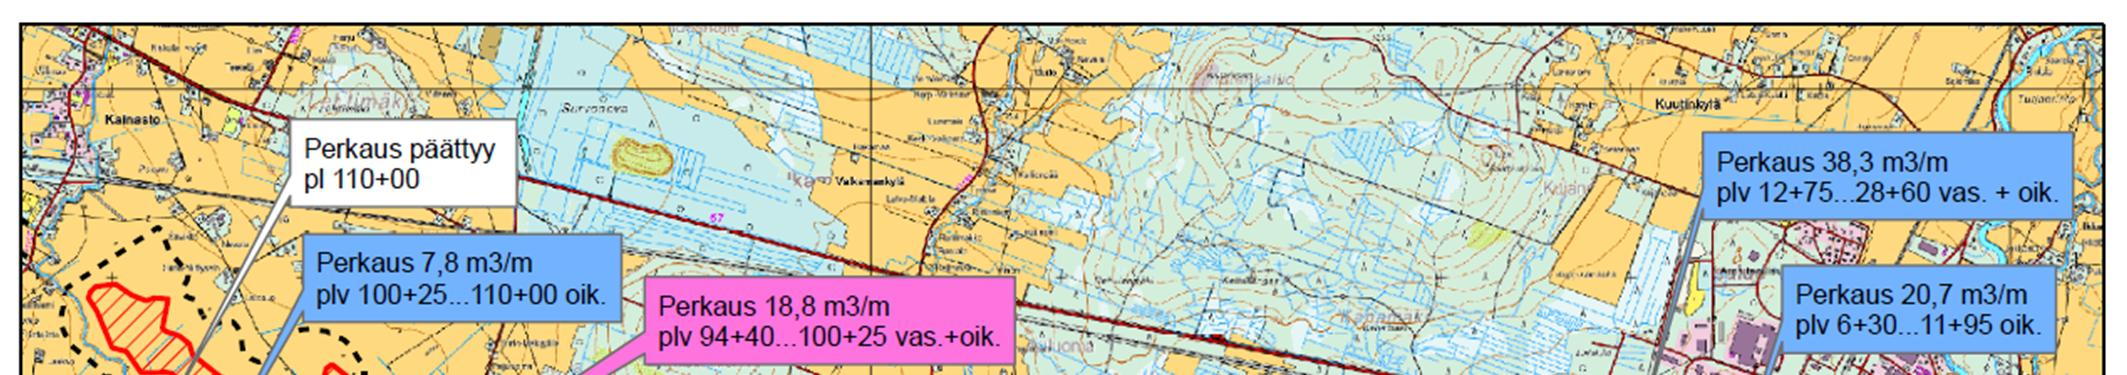 10.2.4 Övriga åtgärder Översvämningsskyddsprojektet i det nedre loppet av Kainastonjoki å För det nedre loppet av Kainastonjoki å, som ligger i Kauhajoki, har planerats ett översvämningsskyddsprojekt.